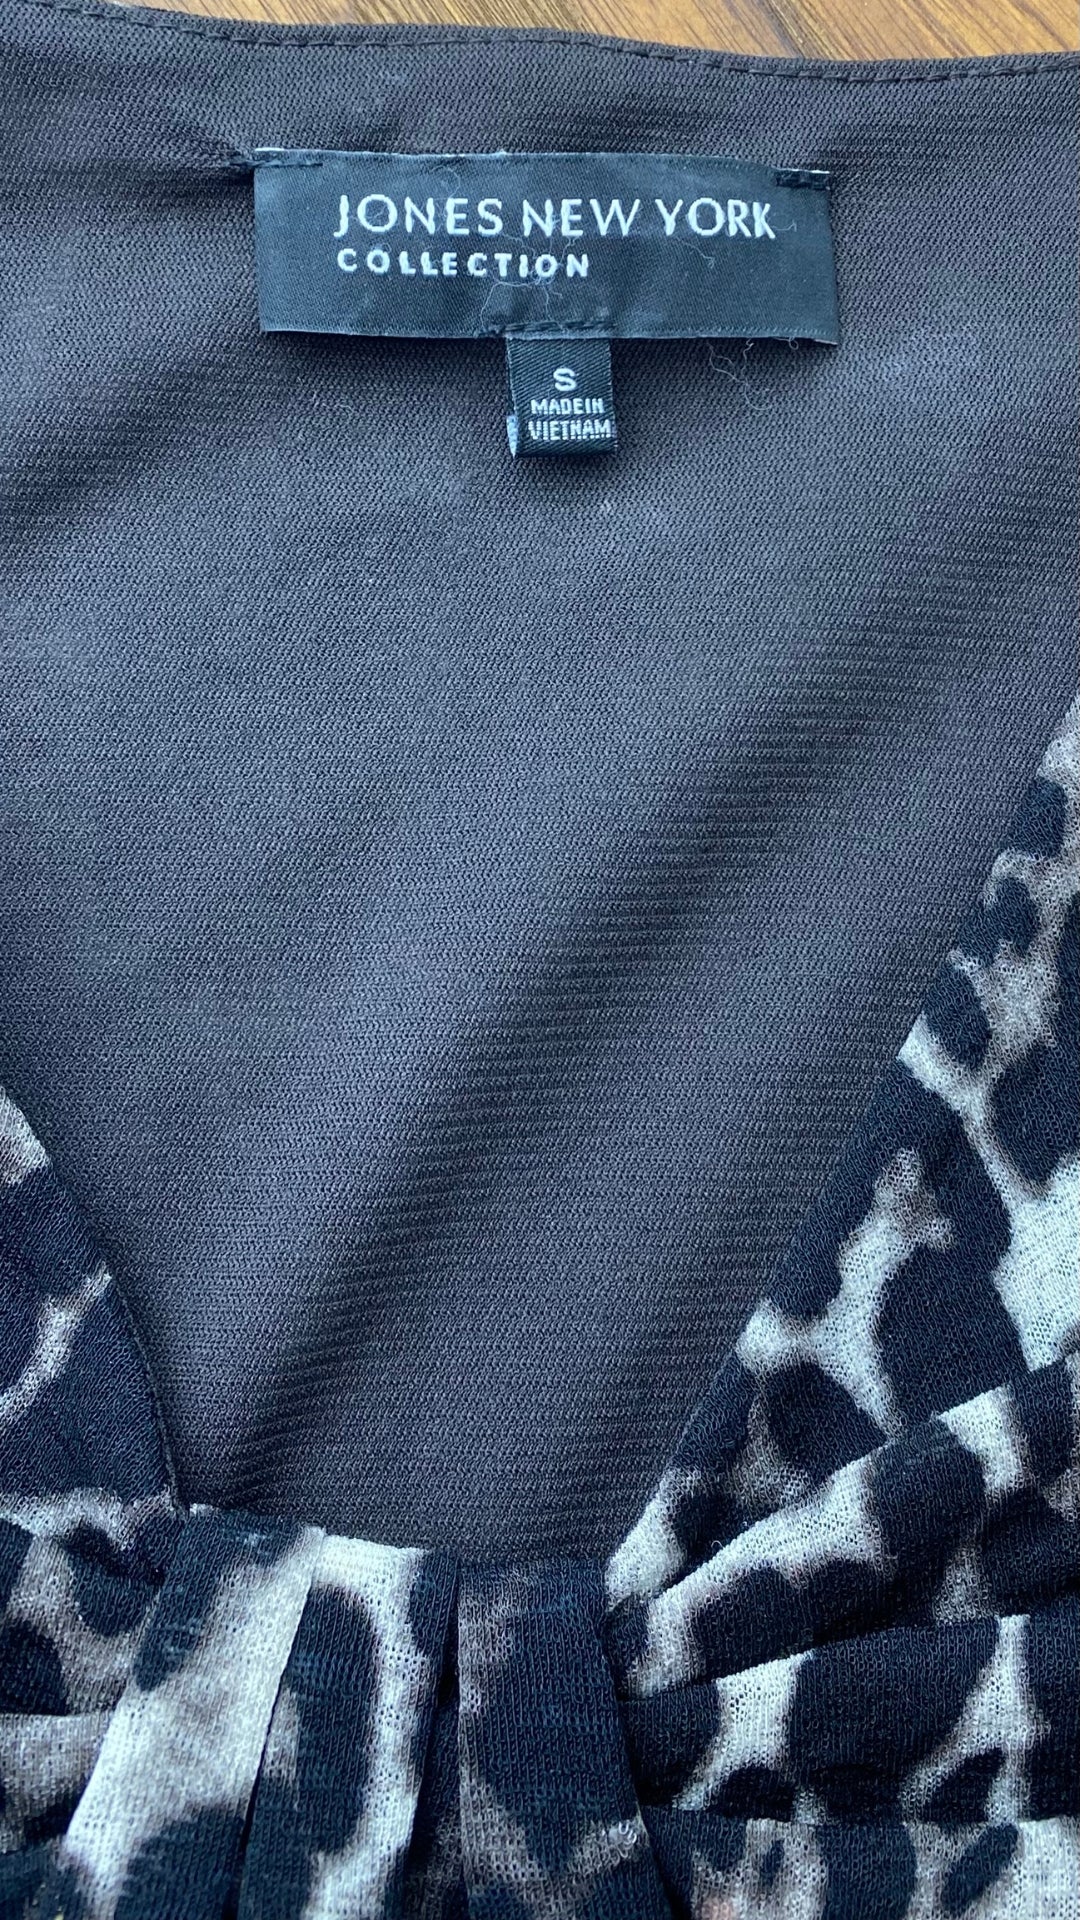 Chandail léger à motif léopard Jones New York, taille small. Vue de l'étiquette de marque et taille.